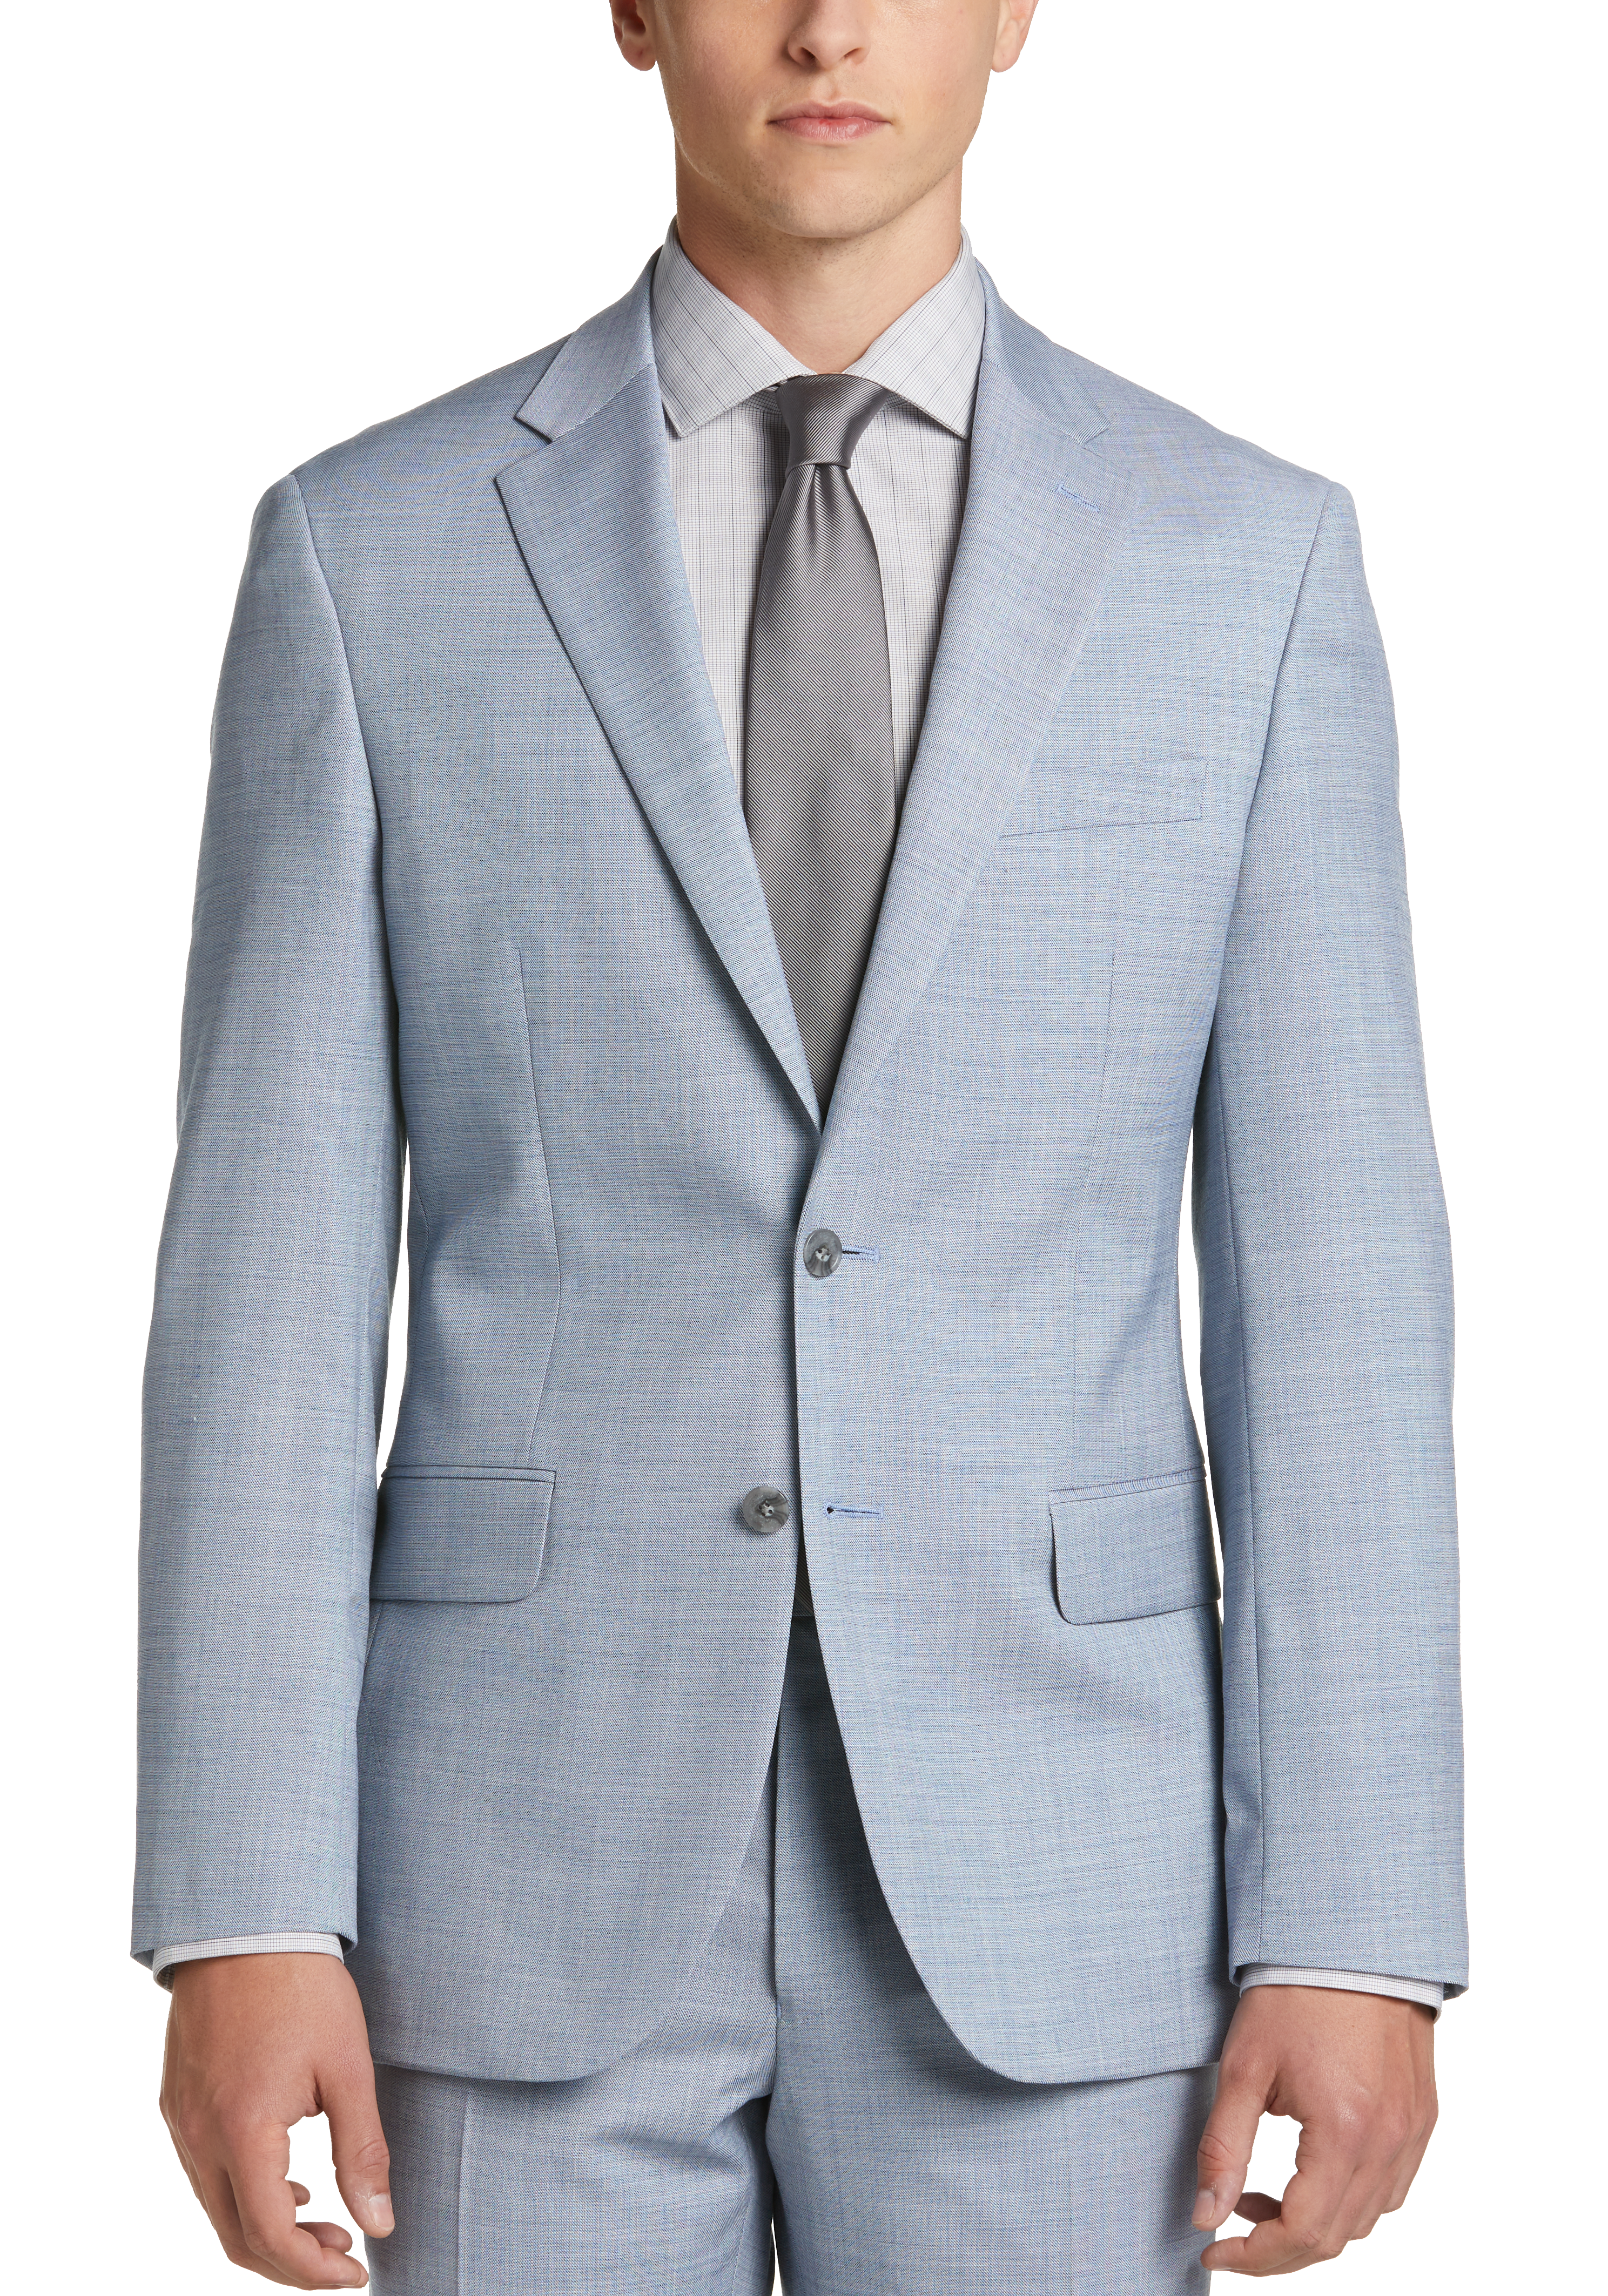 JOE Joseph Abboud Slim Fit Suit, Light Blue Sharkskin - Men's Suits ...